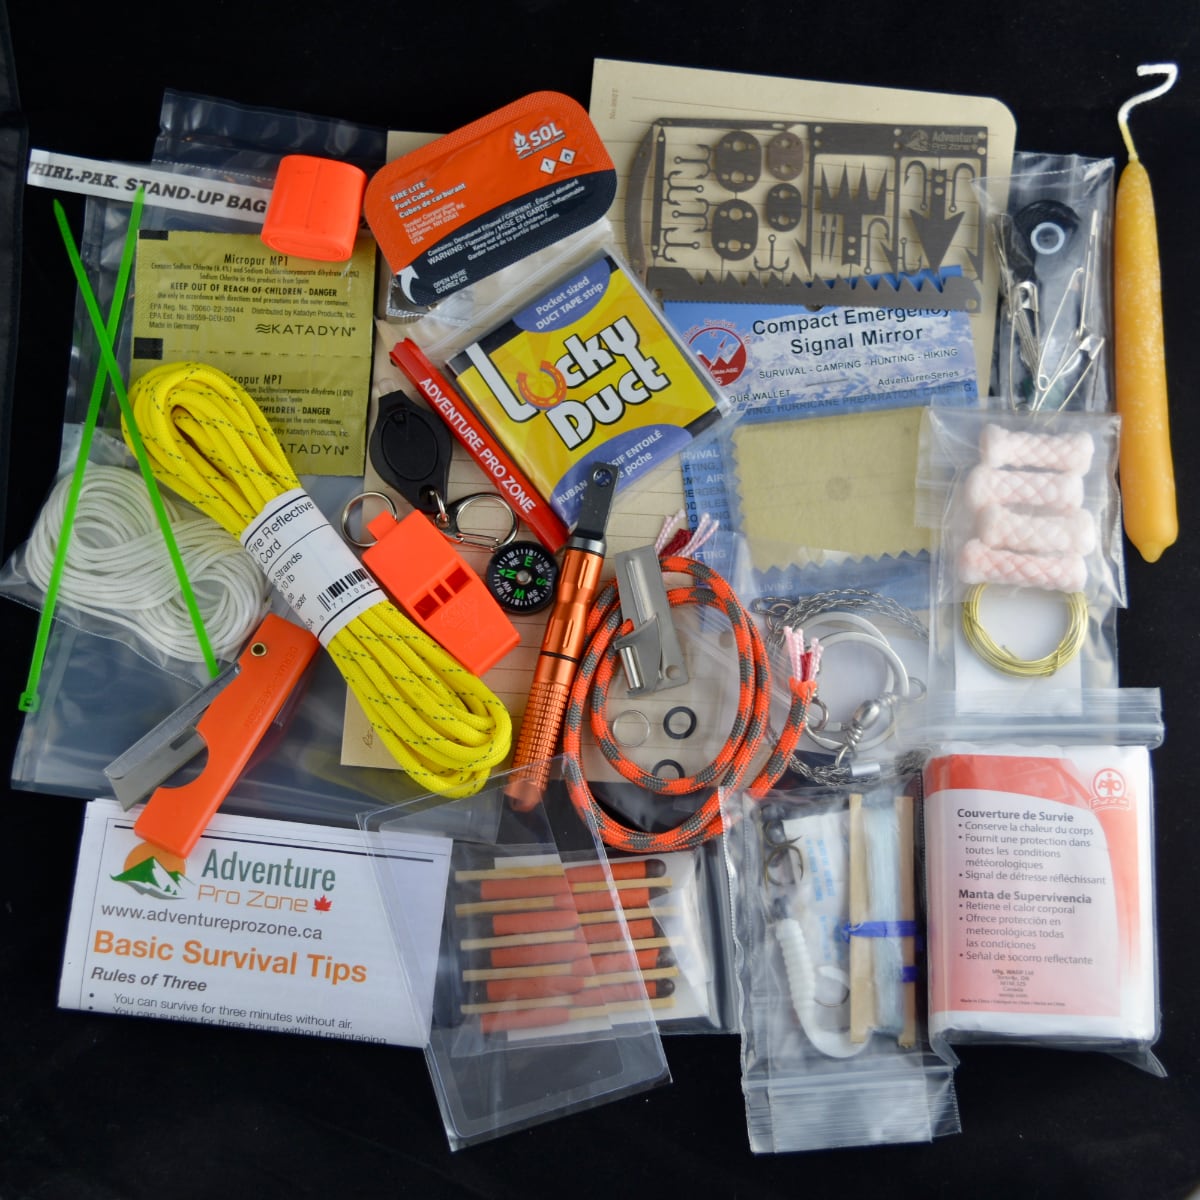 Adventurer Survival Kit V2.0, 75 Items